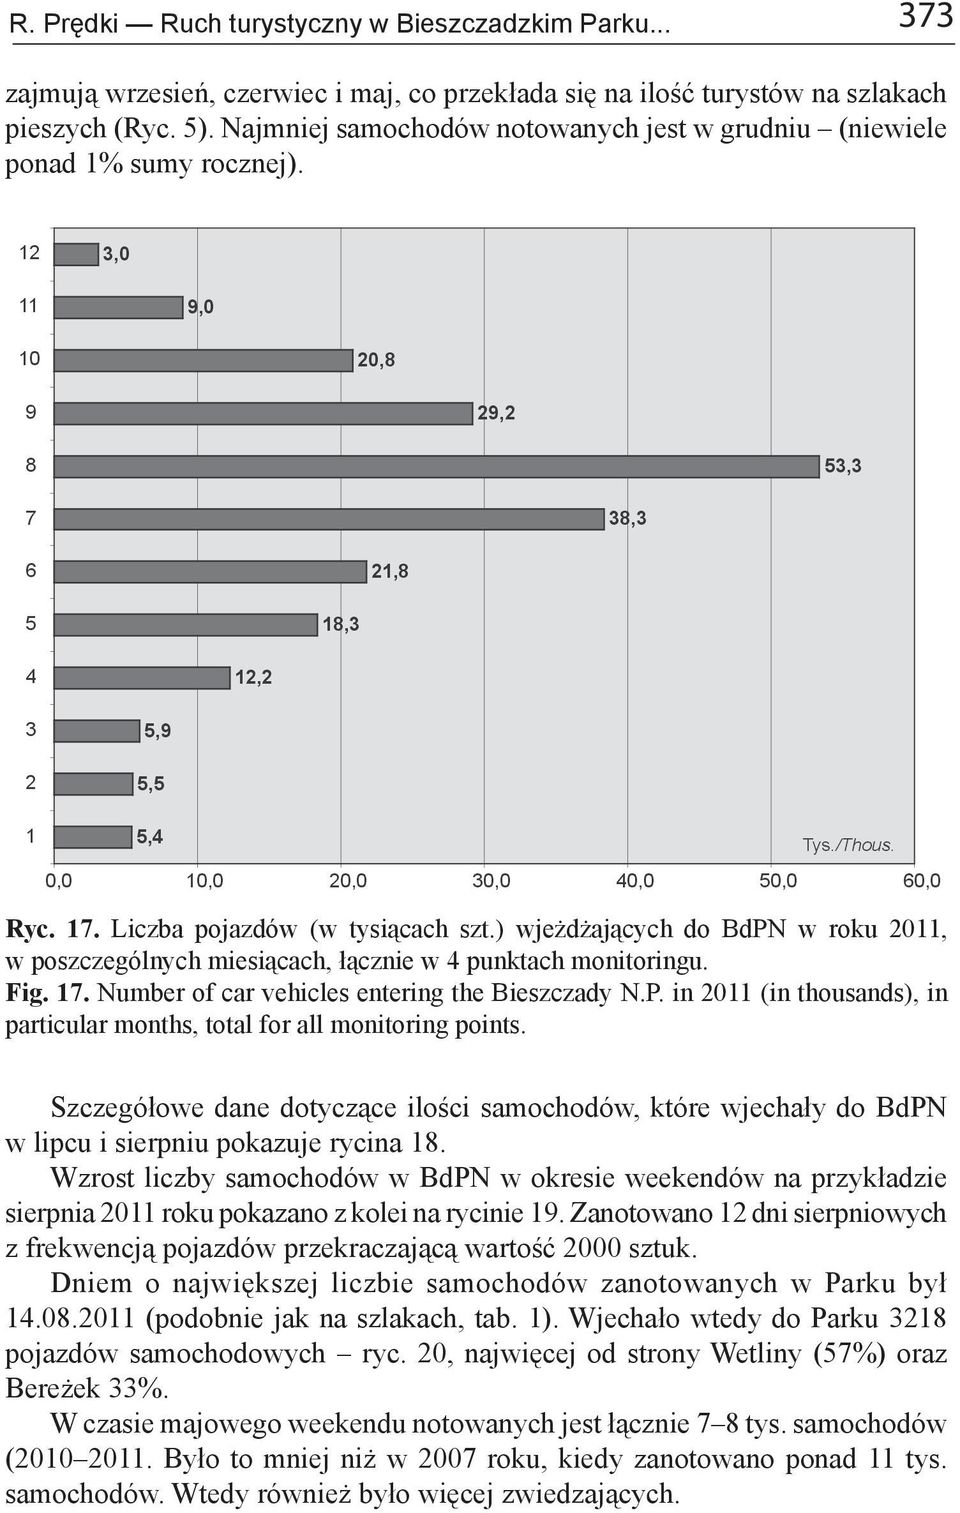 ) wjeżdżających do BdPN w roku 2011, w poszczególnych miesiącach, łącznie w 4 punktach monitoringu. Fig. 17. Number of car vehicles entering the Bieszczady N.P. in 2011 (in thousands), in particular months, total for all monitoring points.